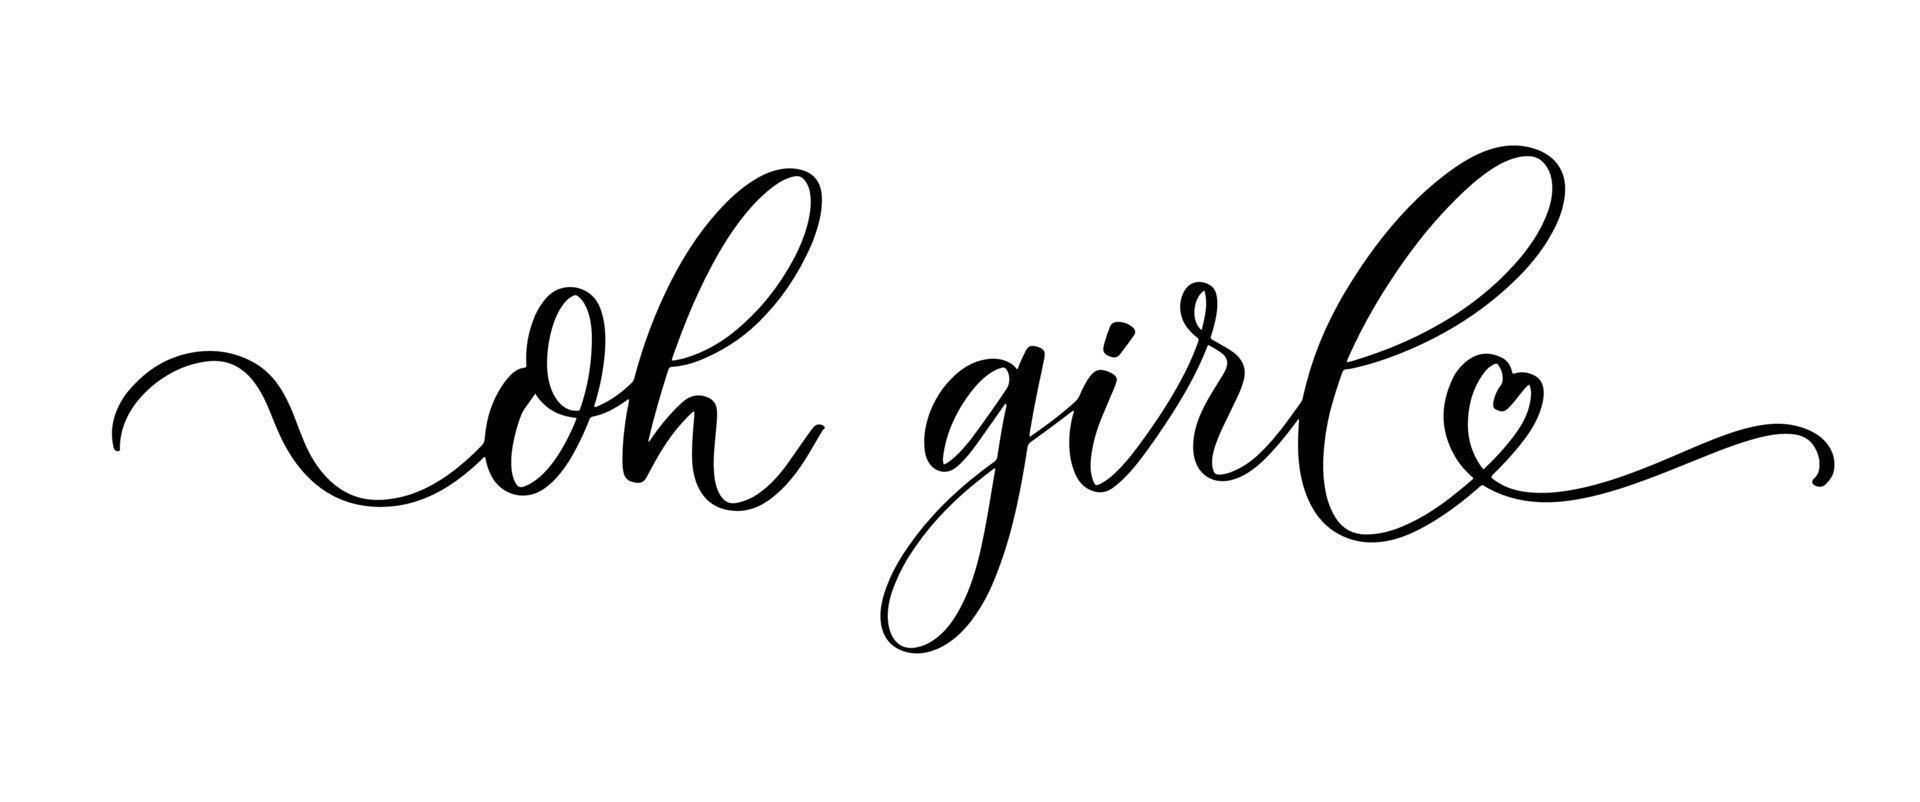 oh girl - citation de lettrage de typographie, bannière de calligraphie au pinceau avec une fine ligne. vecteur